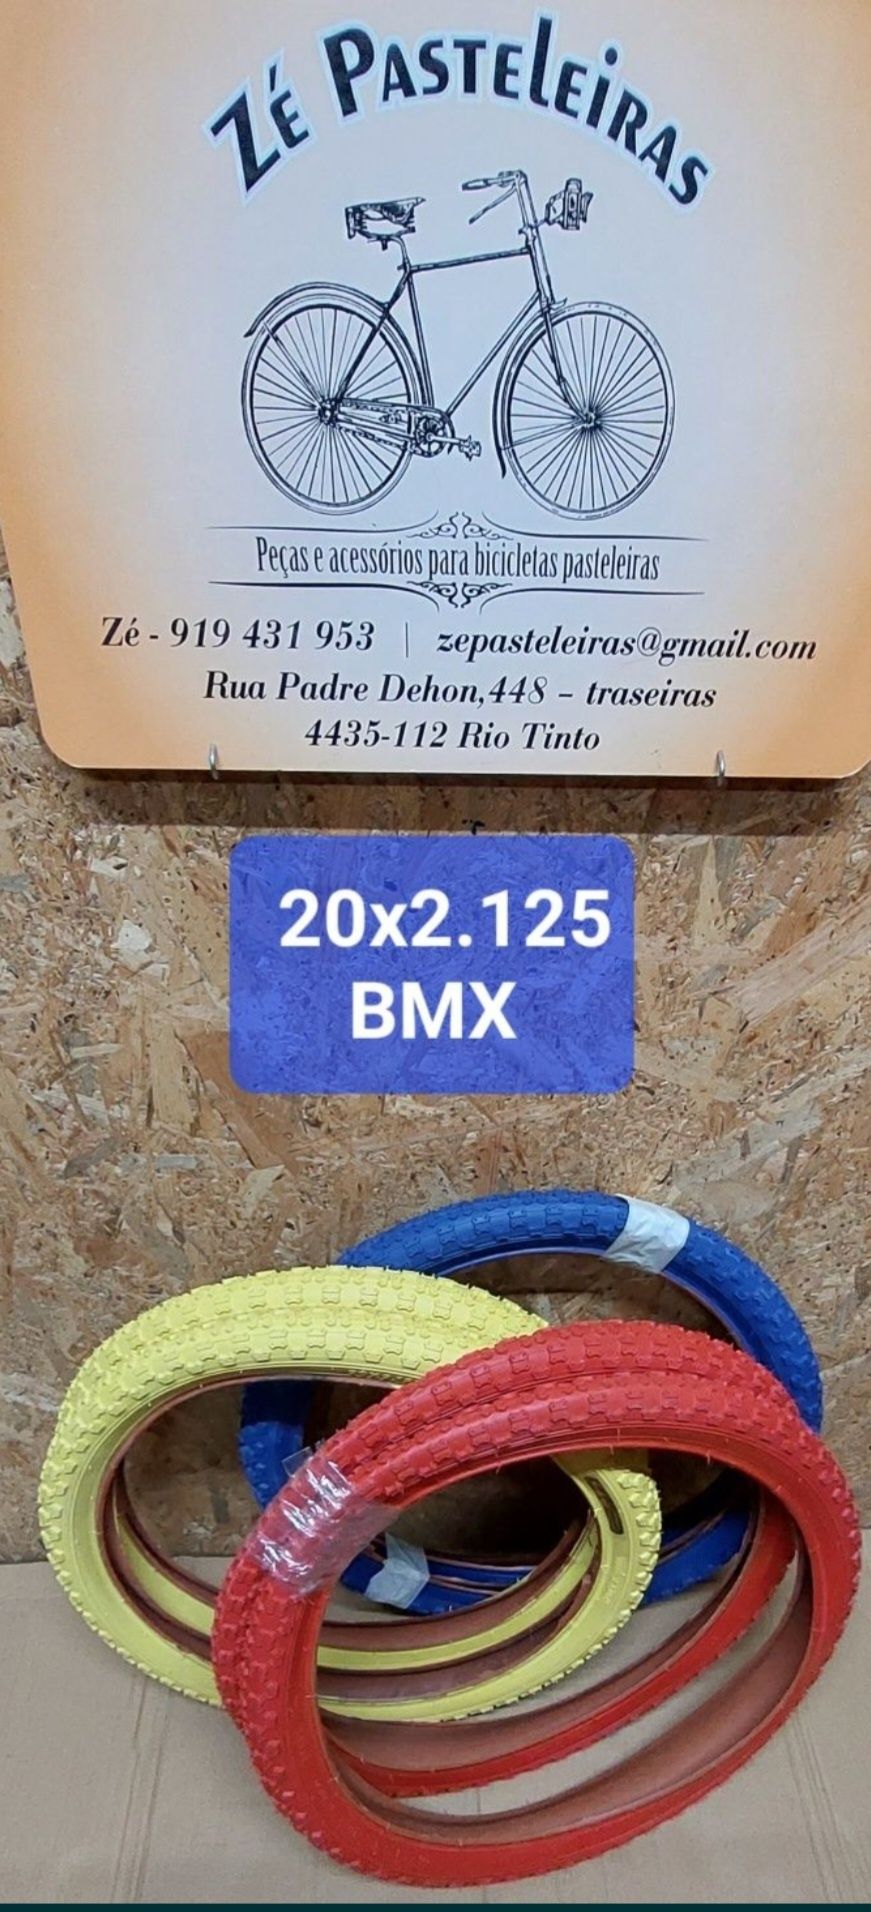 Pneus 20x2.125 BMX vermelho,Azul,amarelo